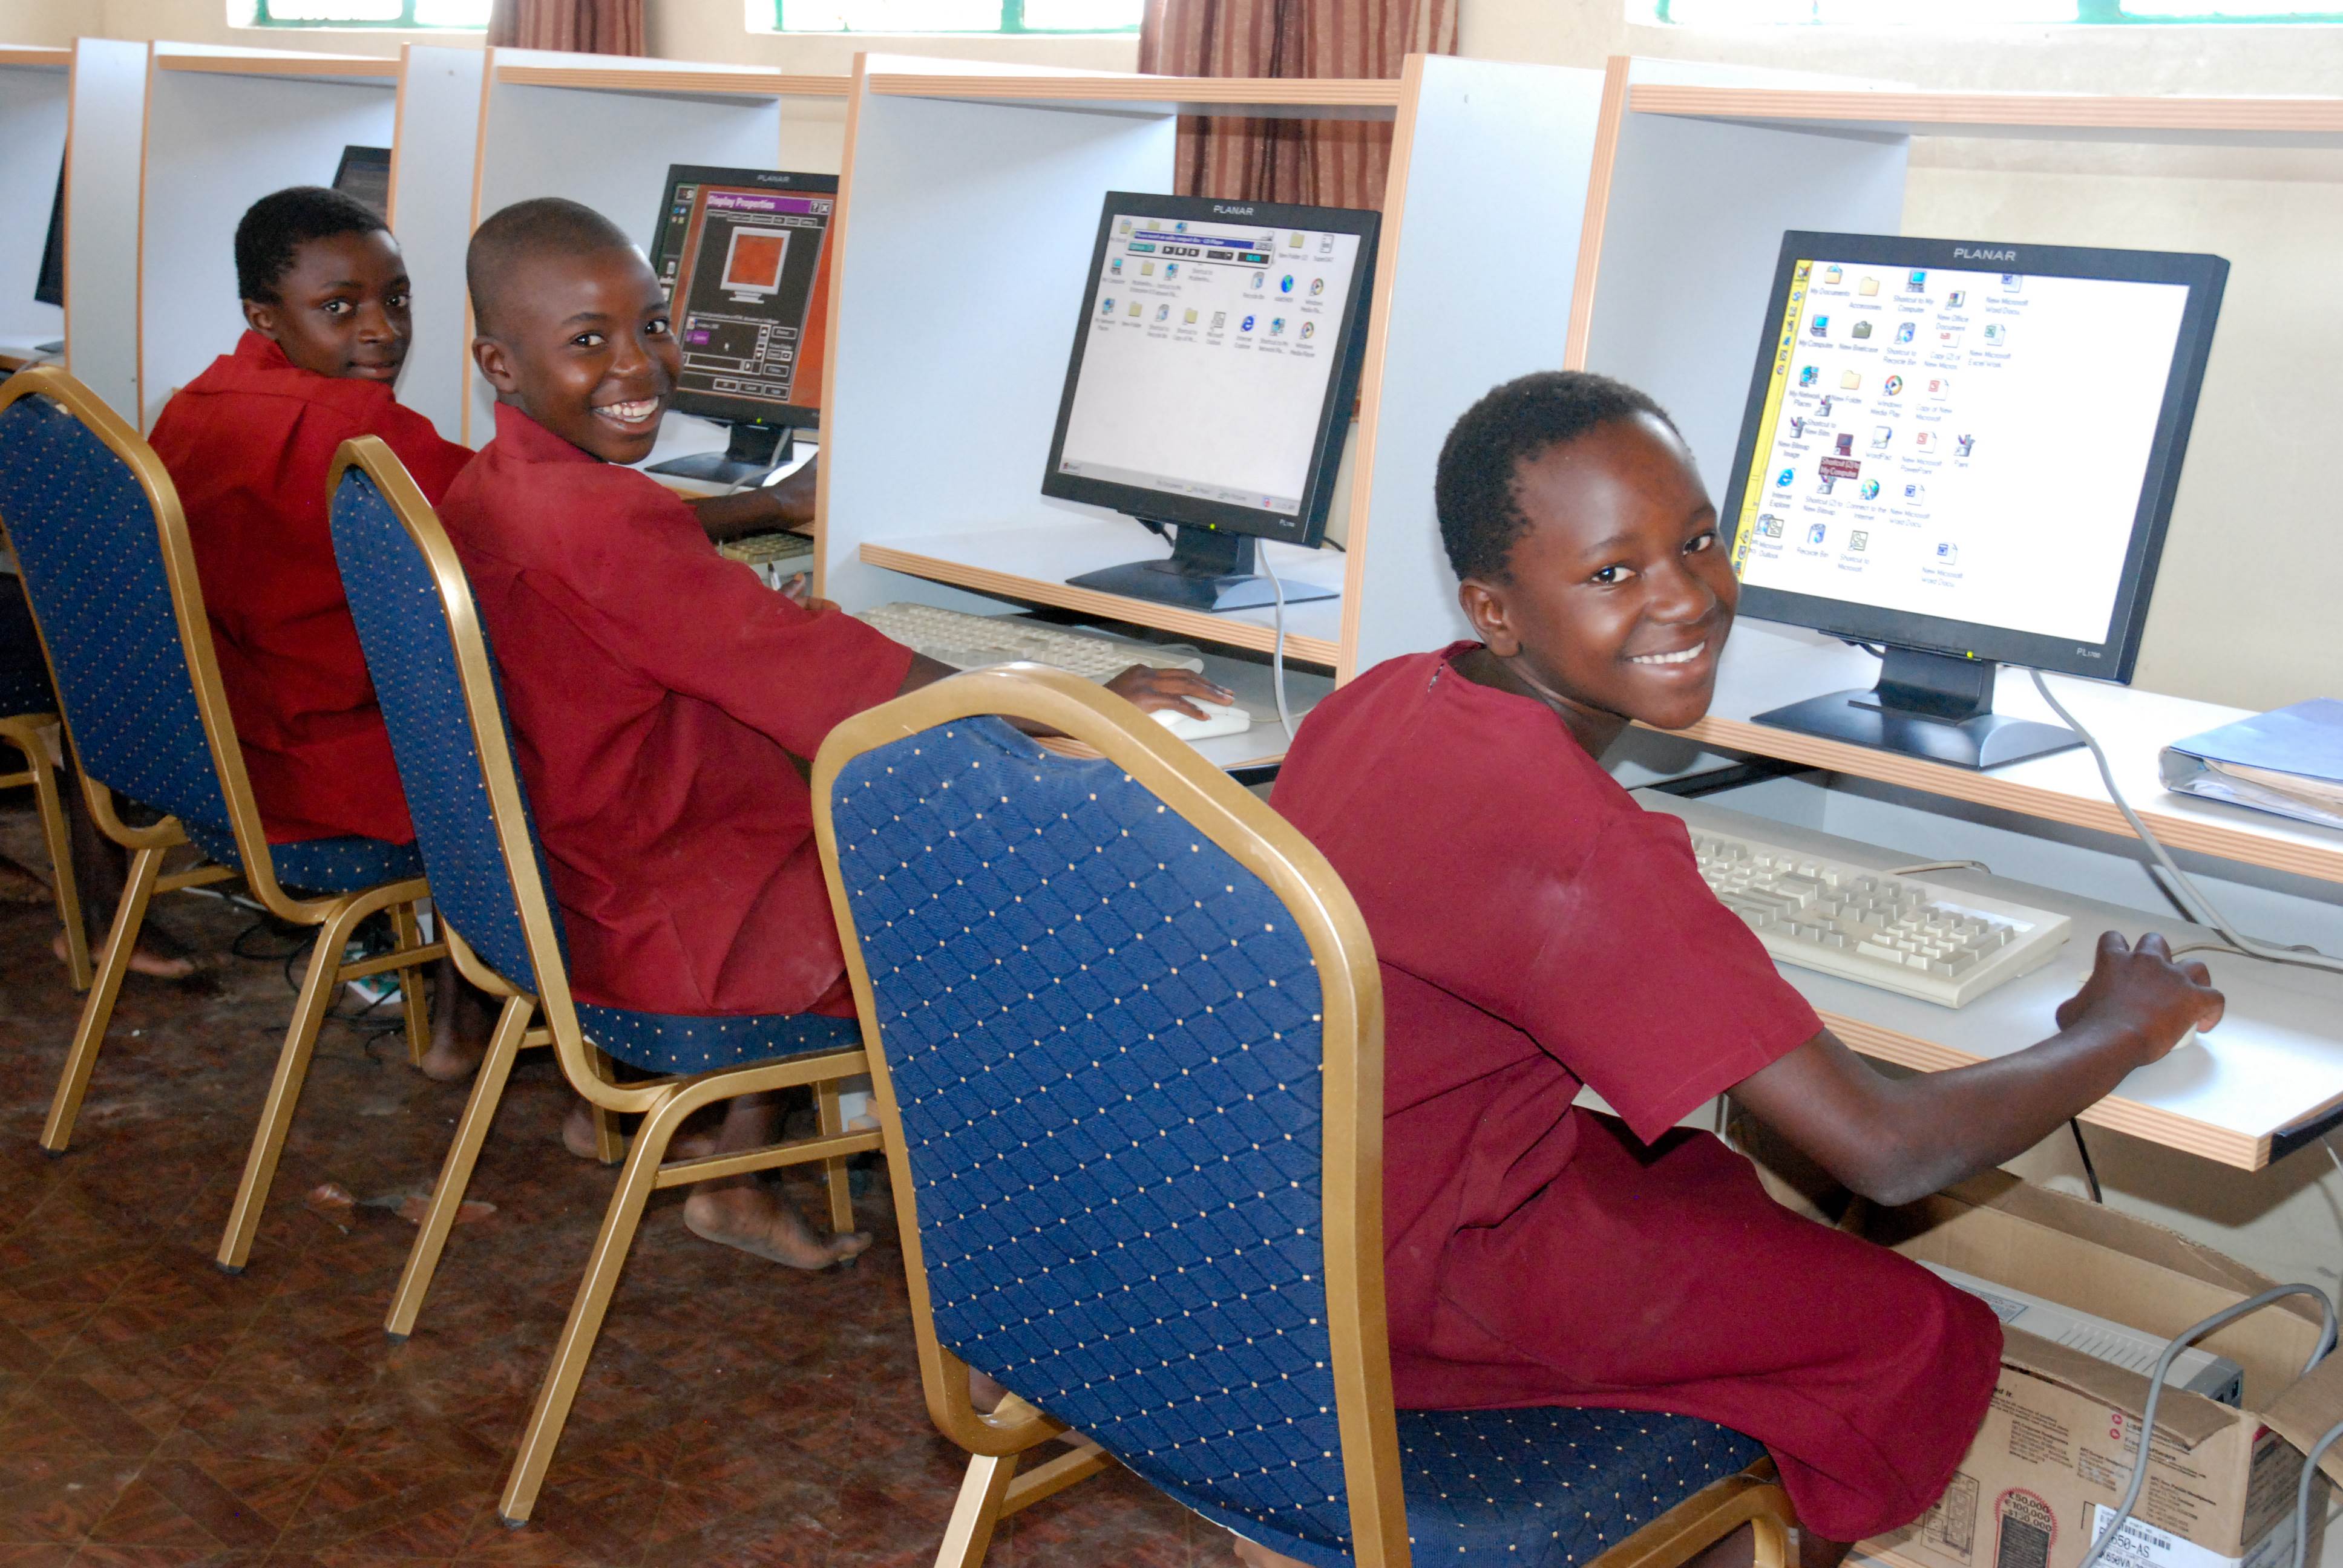 Tres niños en uniforme rojo, cada uno frente a un ordenador